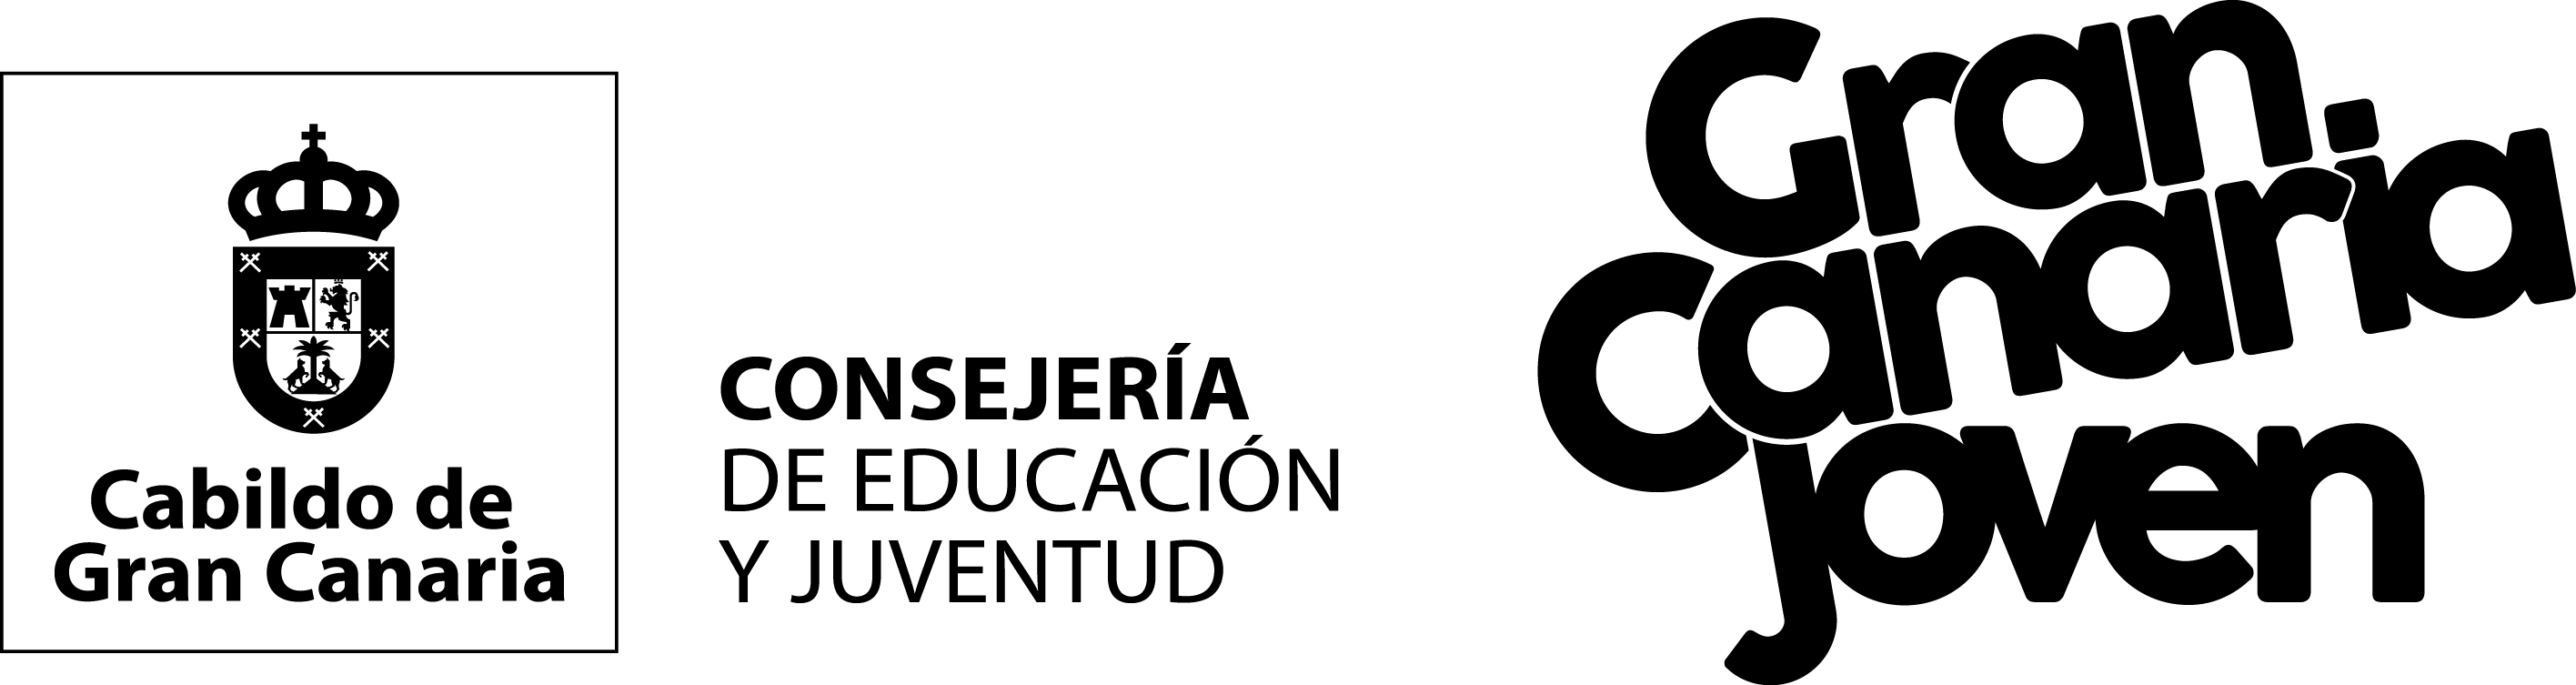 Logo oficial Consejería de Educación y Juventud - Combinado Gran Canaria Joven - Negro